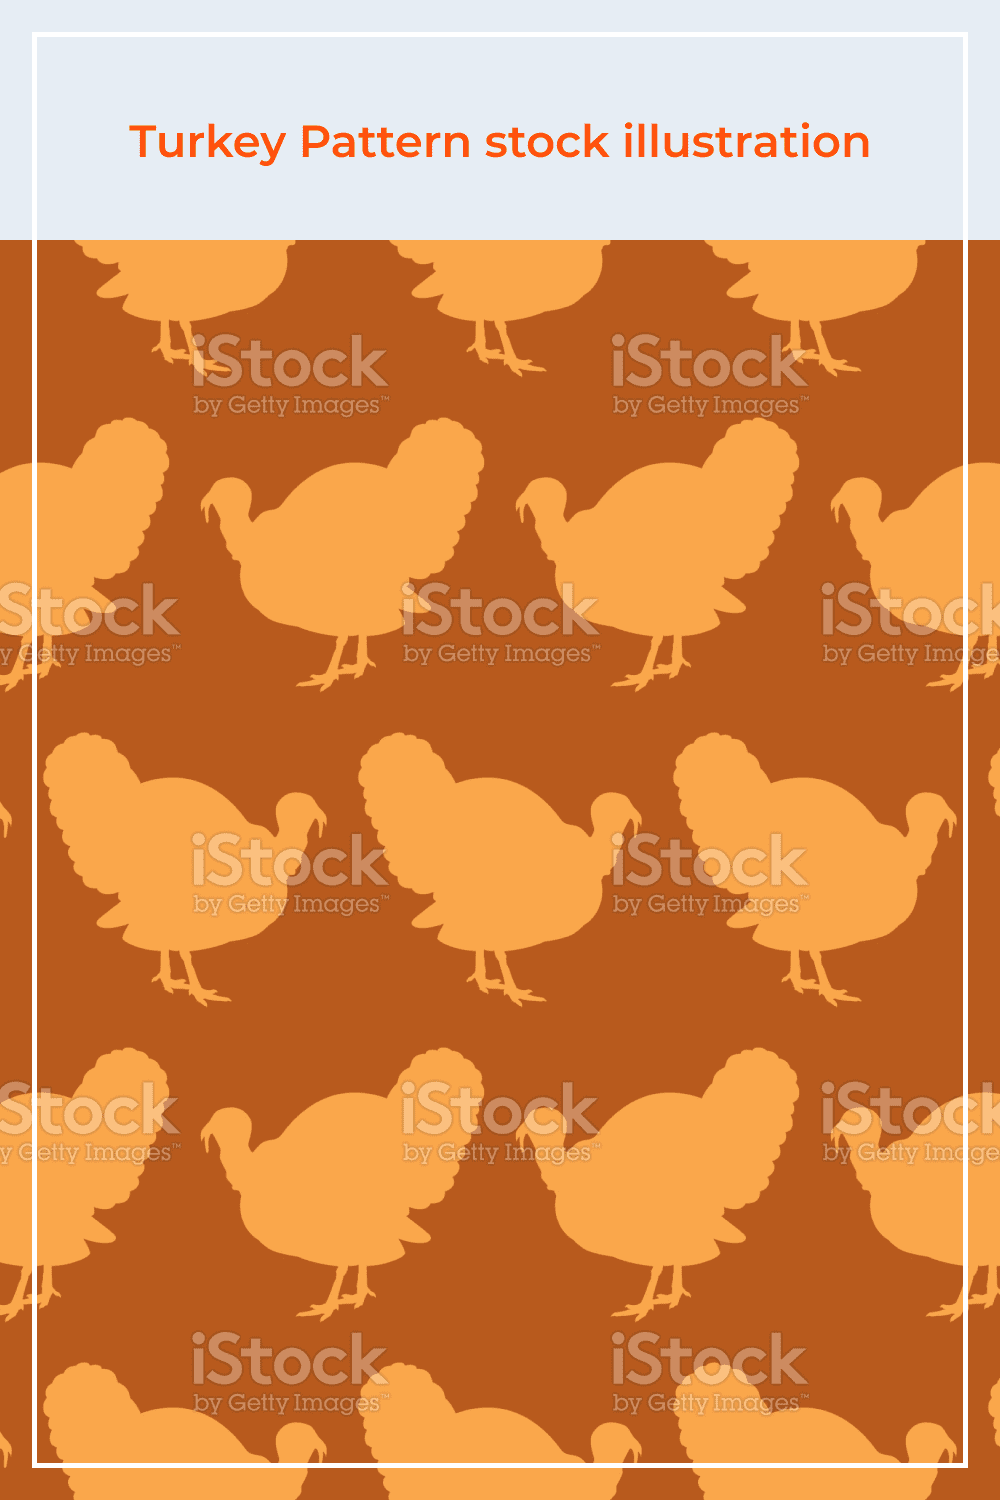 Turkey pattern stock illustration.